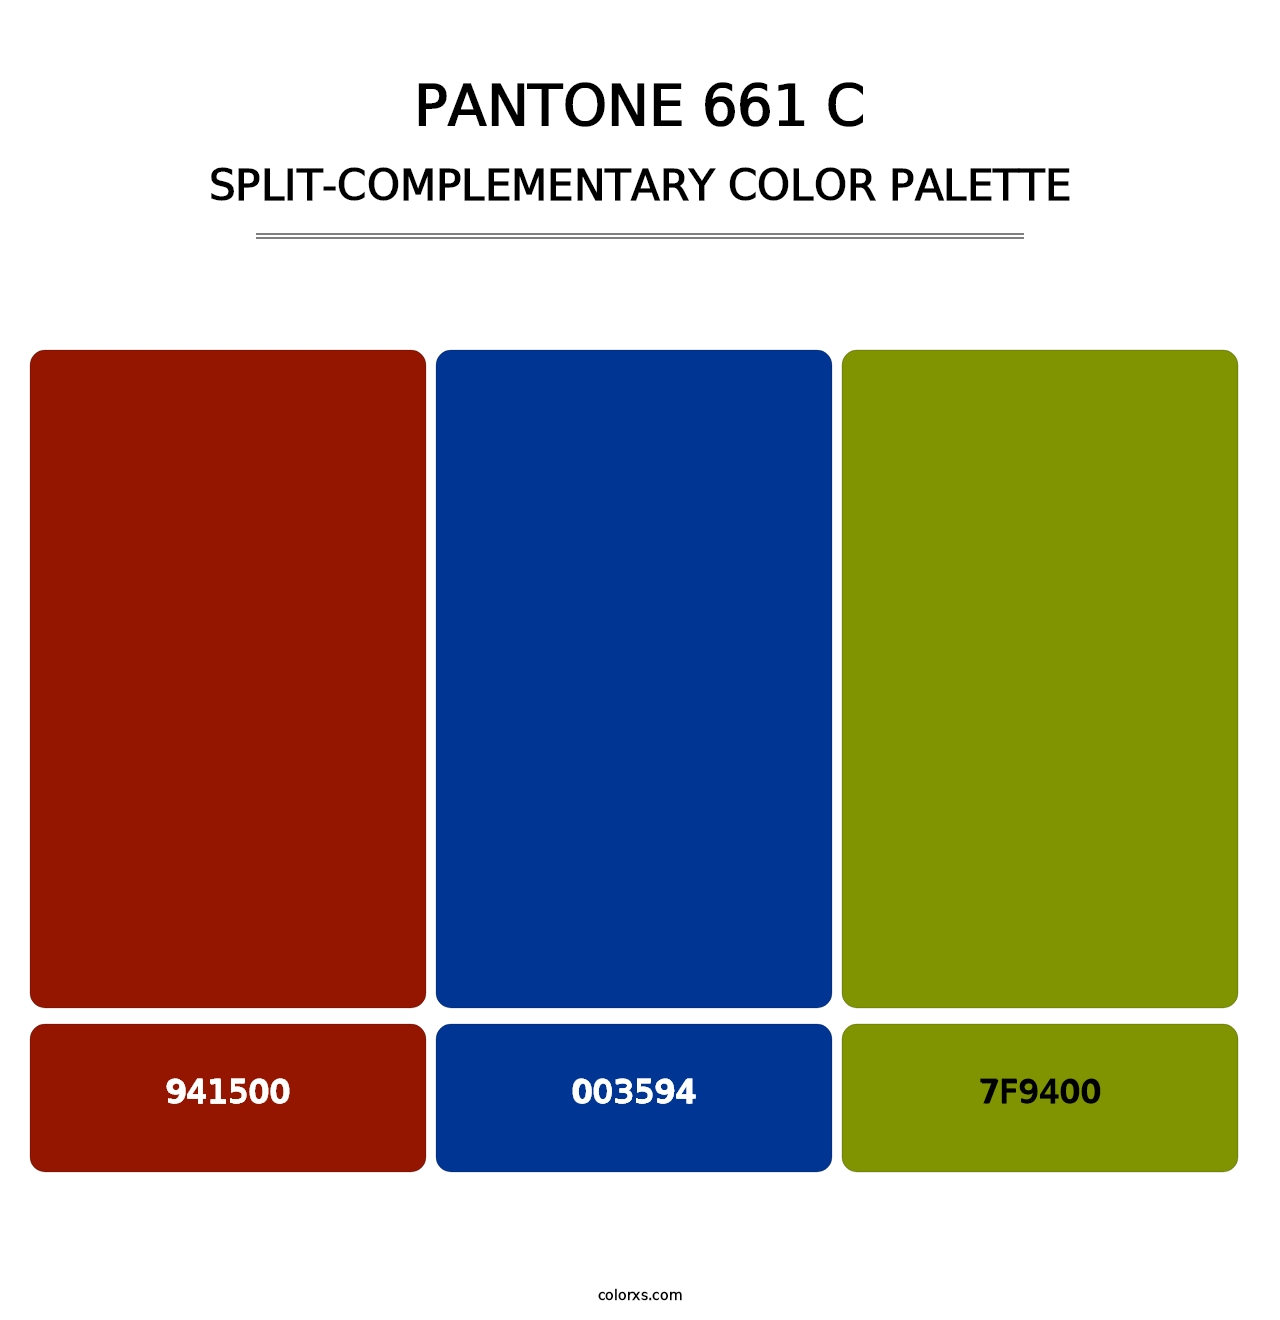 PANTONE 661 C - Split-Complementary Color Palette